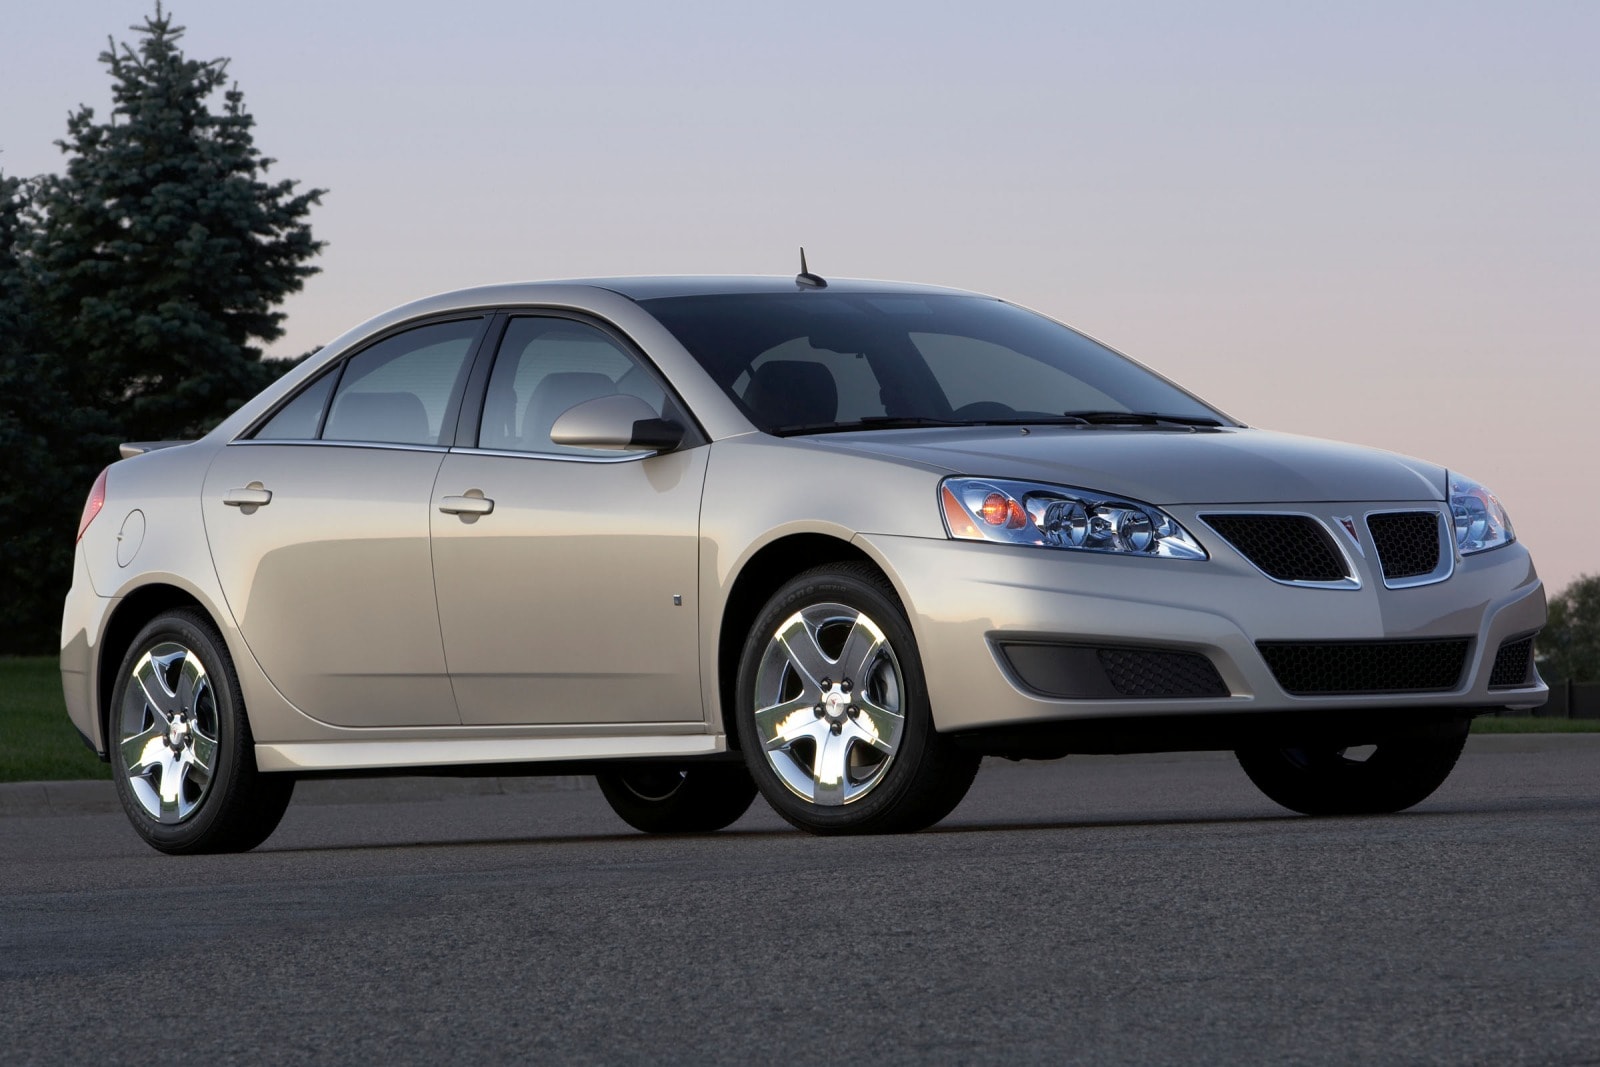 2010 Pontiac G6 Review & Ratings | Edmunds